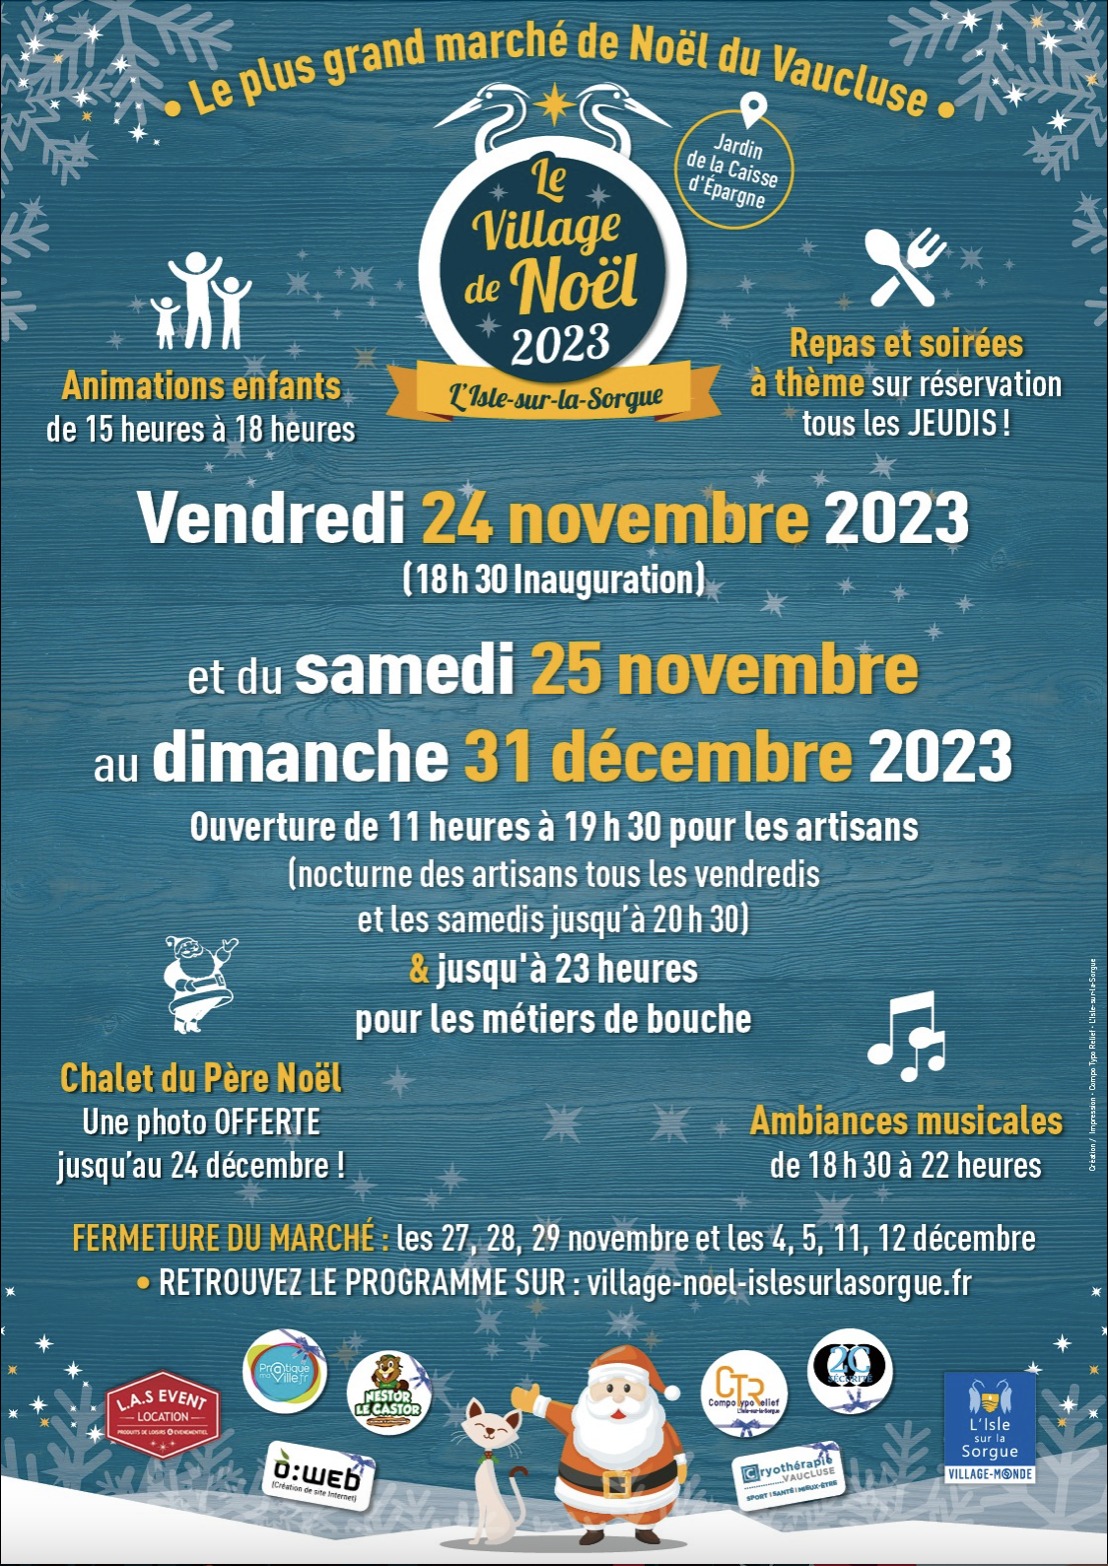 >Noël en Vaucluse 2023 - Le Village de Noël 2023 à L'Isle-sur-la-Sorgue